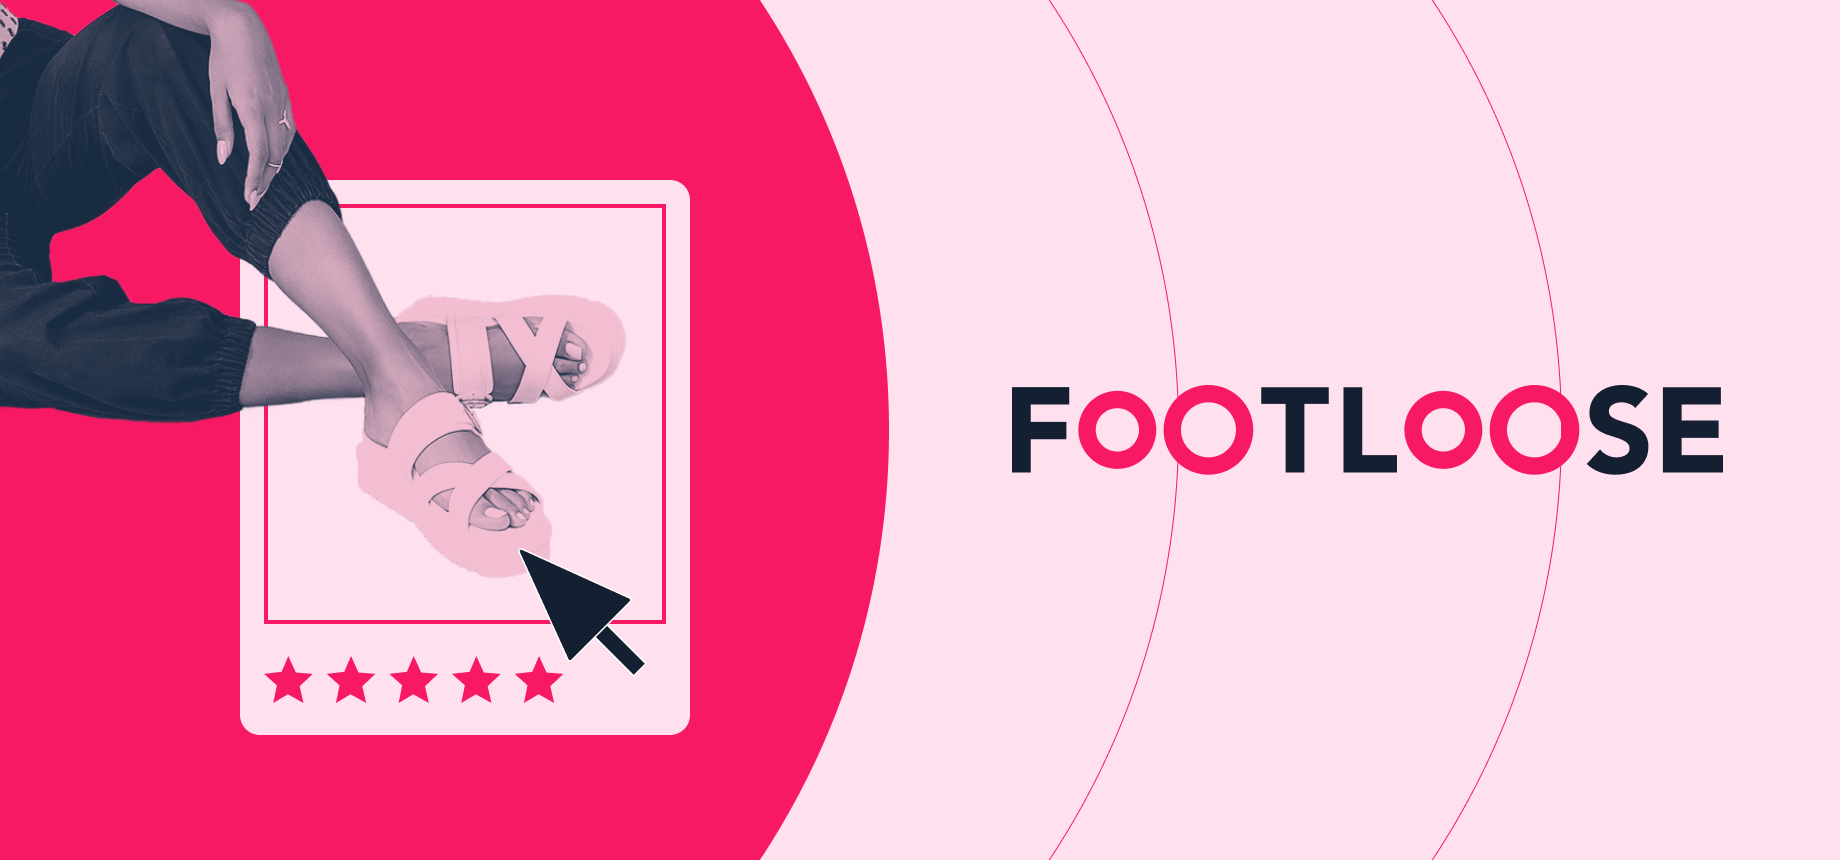 Footloose duplicó su ventas online potenciando sus canales virtuales